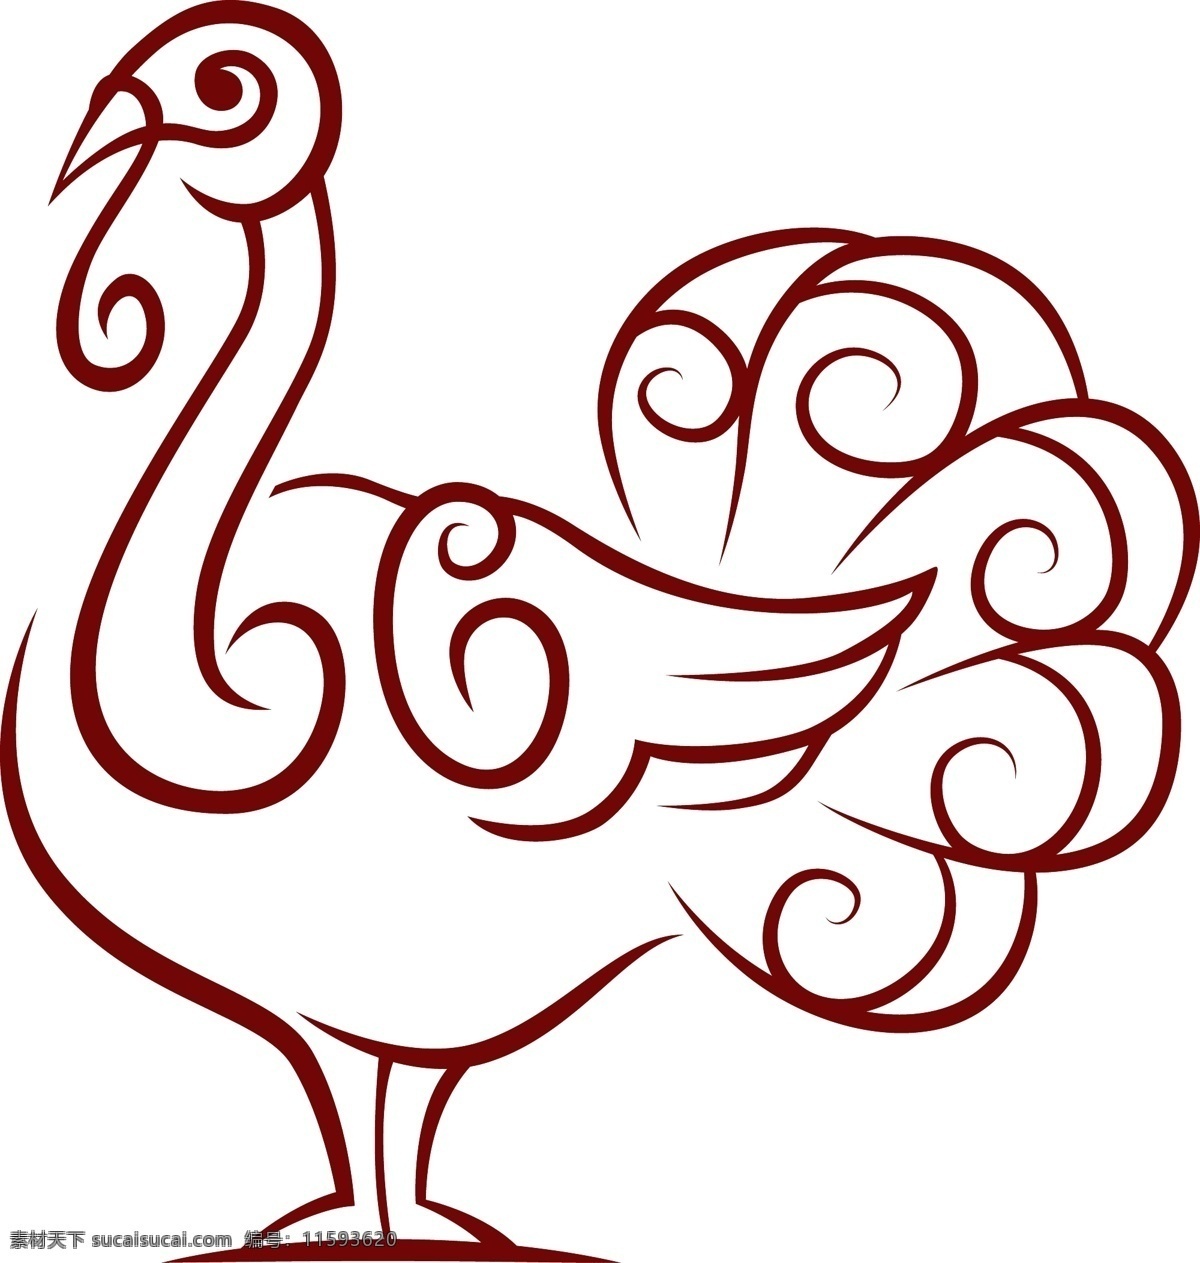 创意 手绘 火鸡 矢量 复活节 节日 动物 矢量图 白色